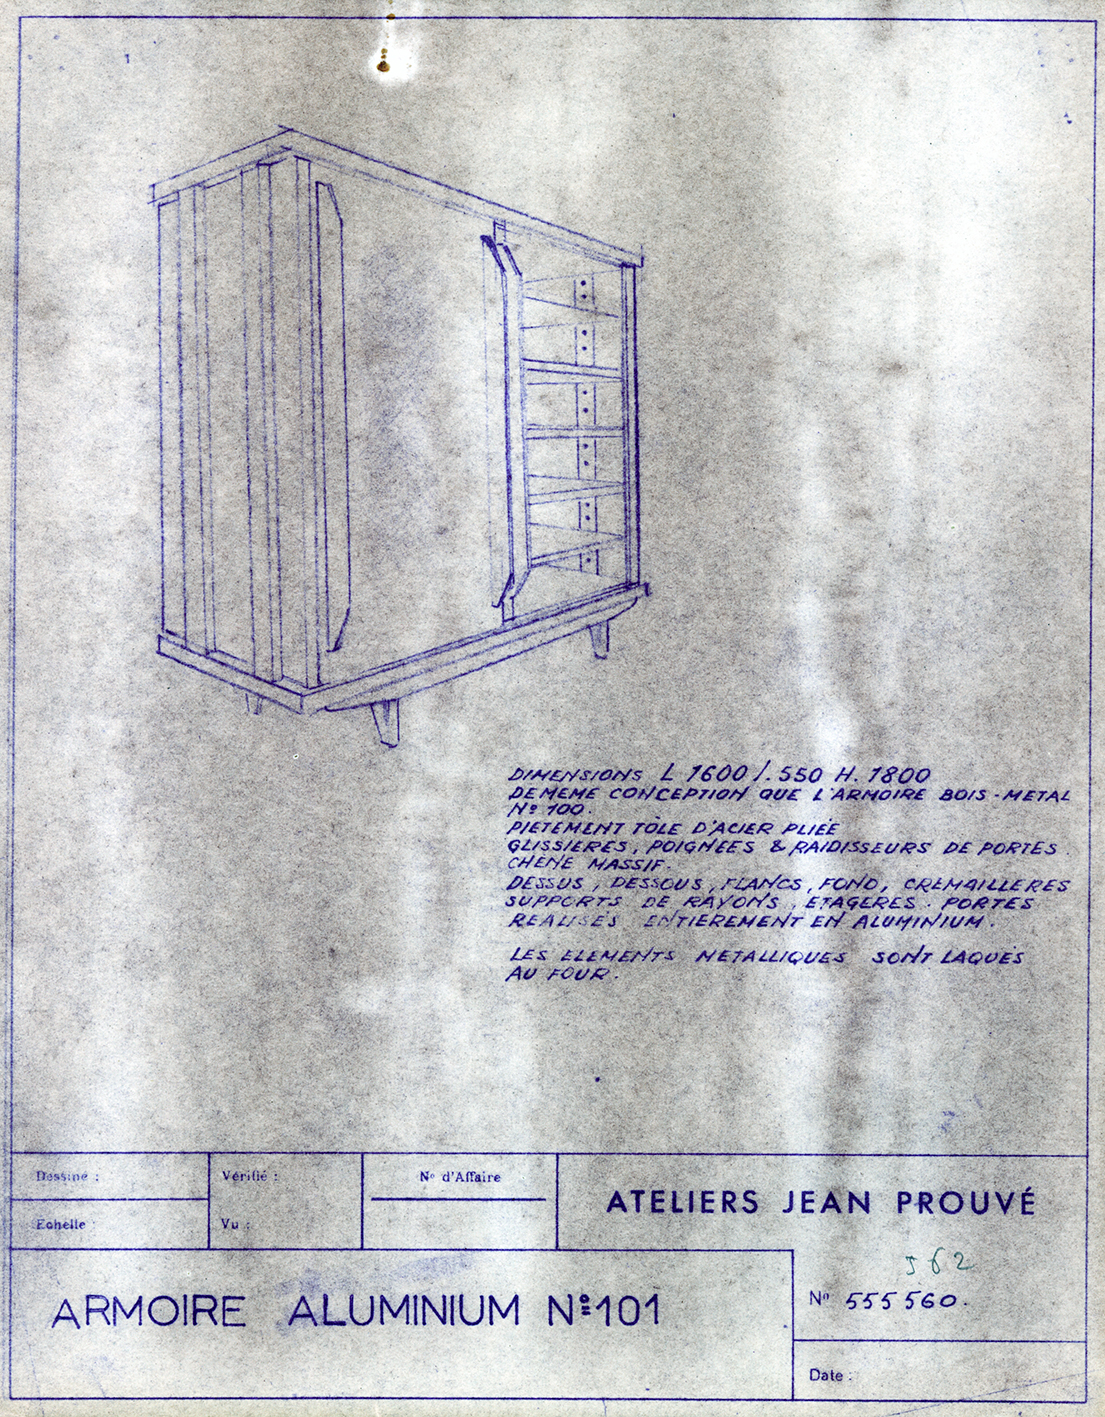 « Armoire aluminium n° 101 ». Fiche descriptive Ateliers Jean Prouvé n° 555.560, c. 1952.